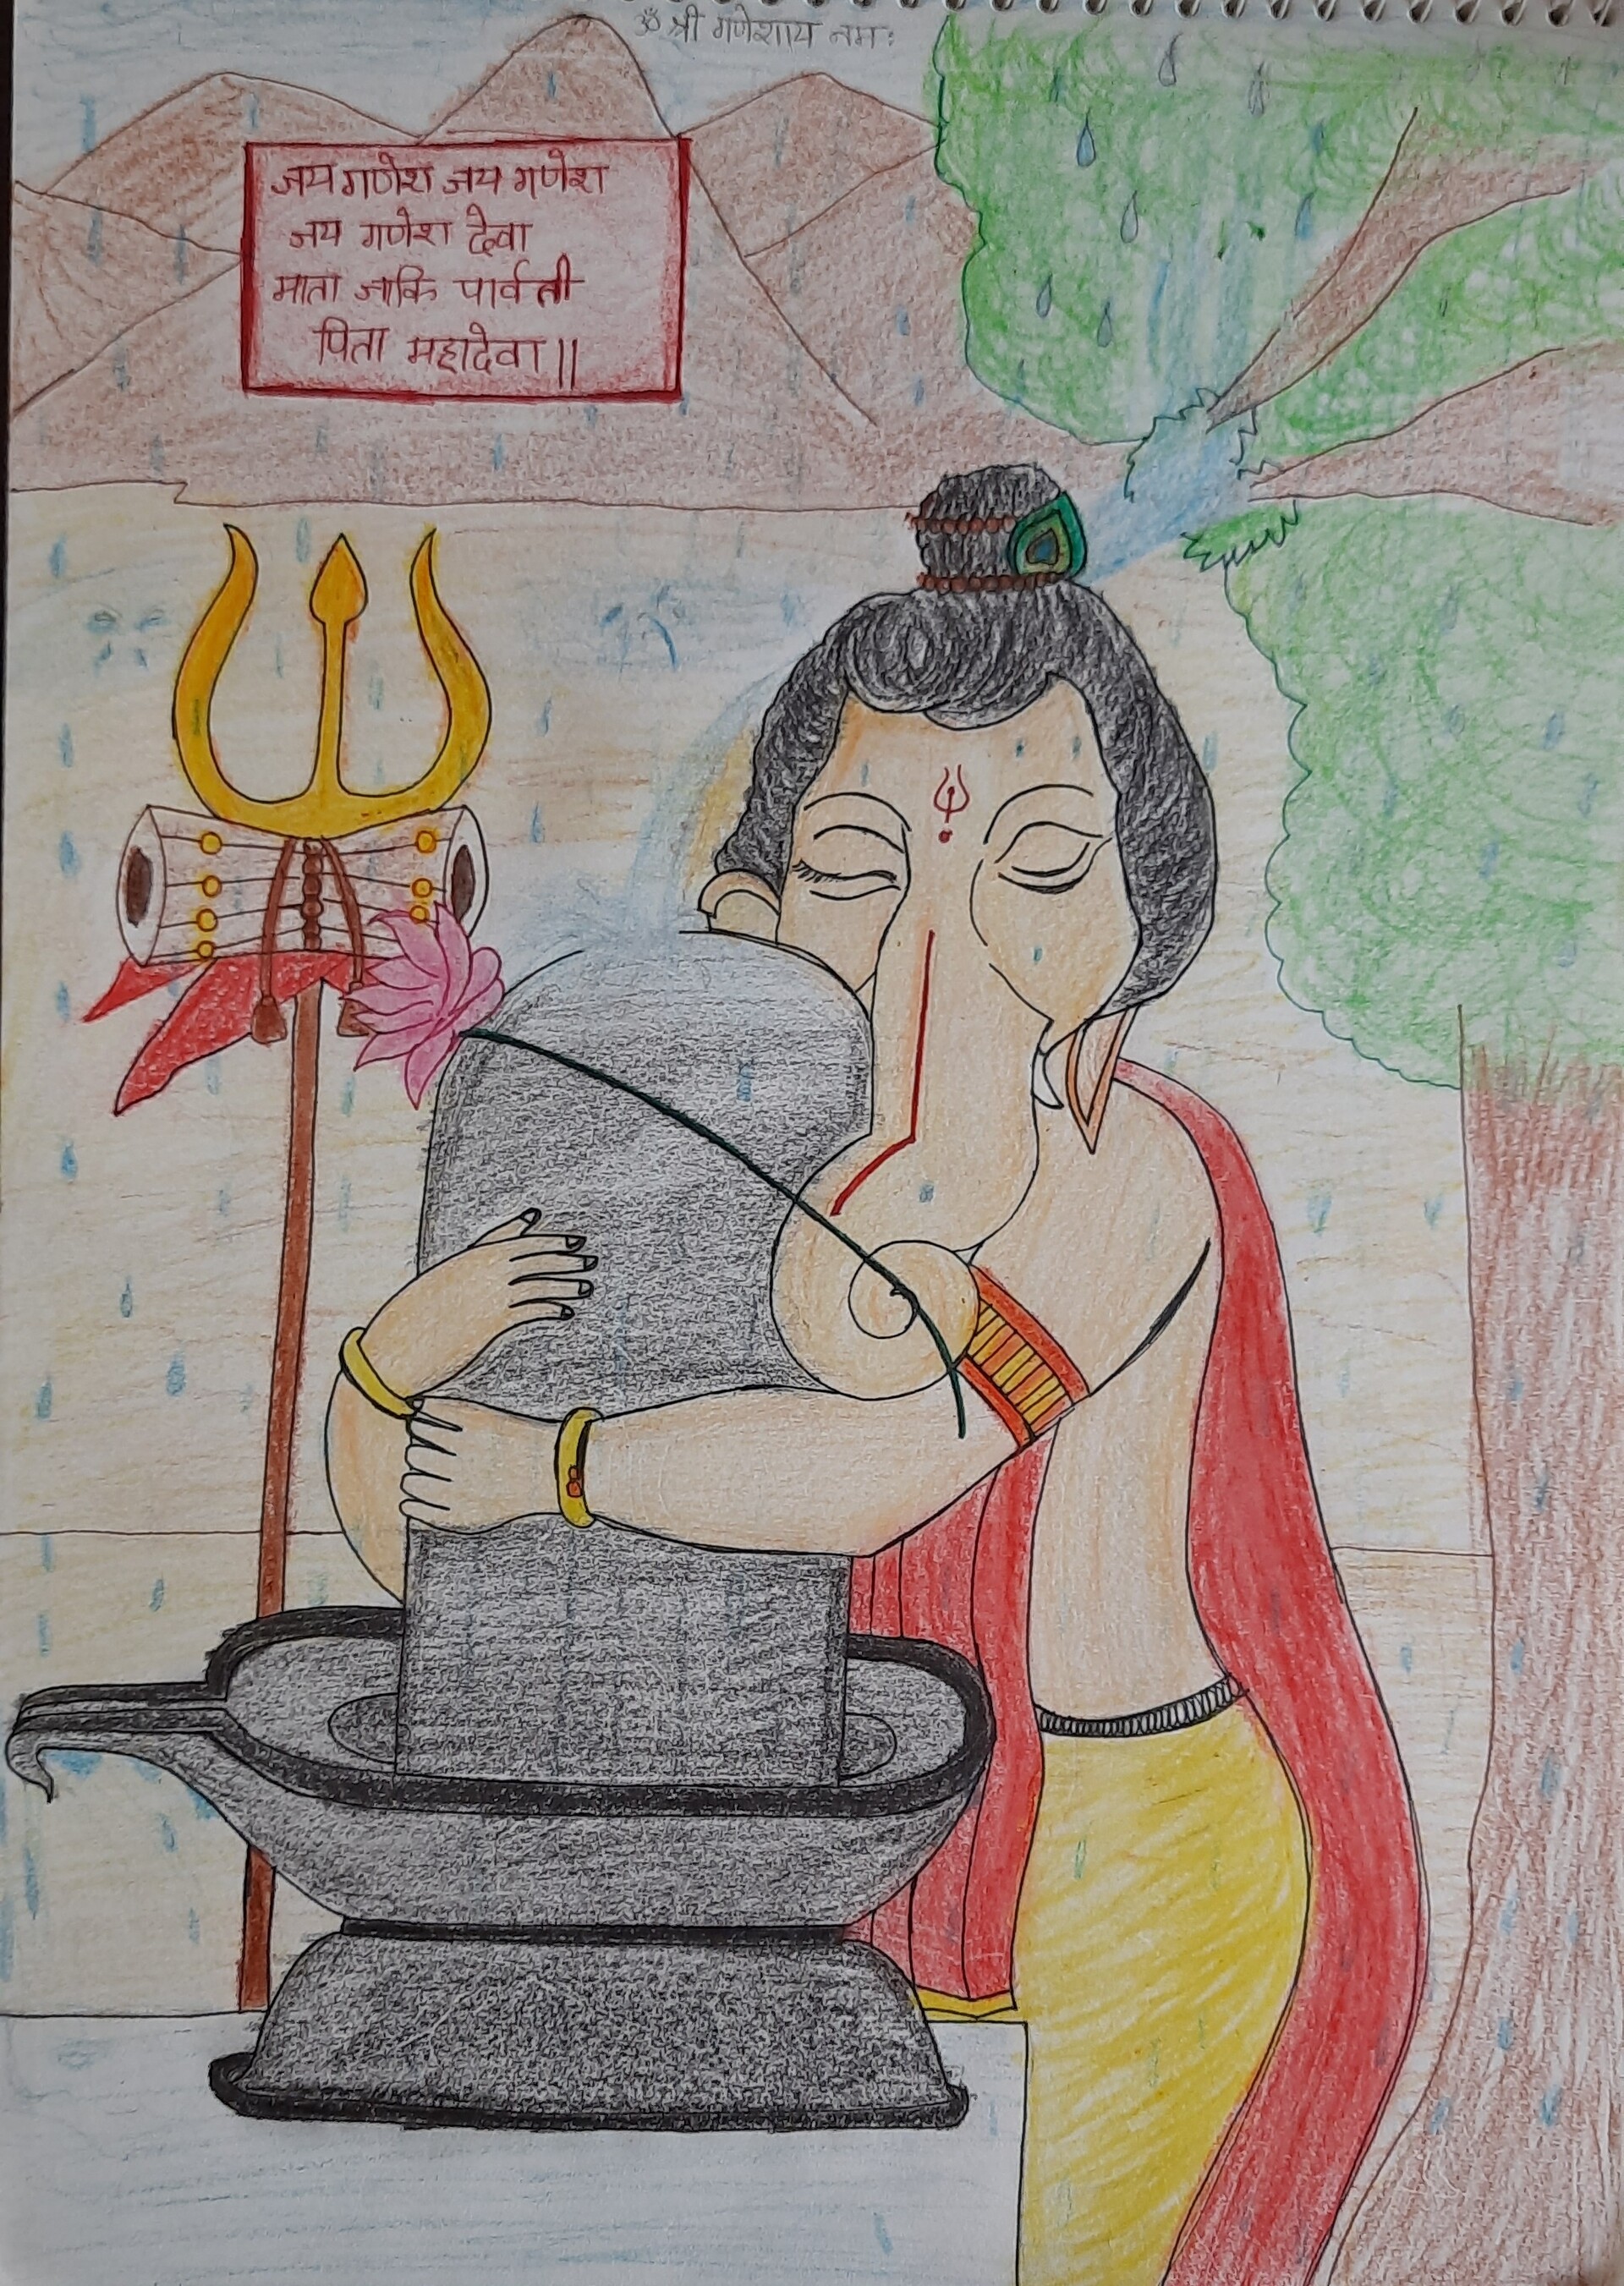 Drawing of Shiv Ji Images • Mansi119 (@15274150408m) on ShareChat